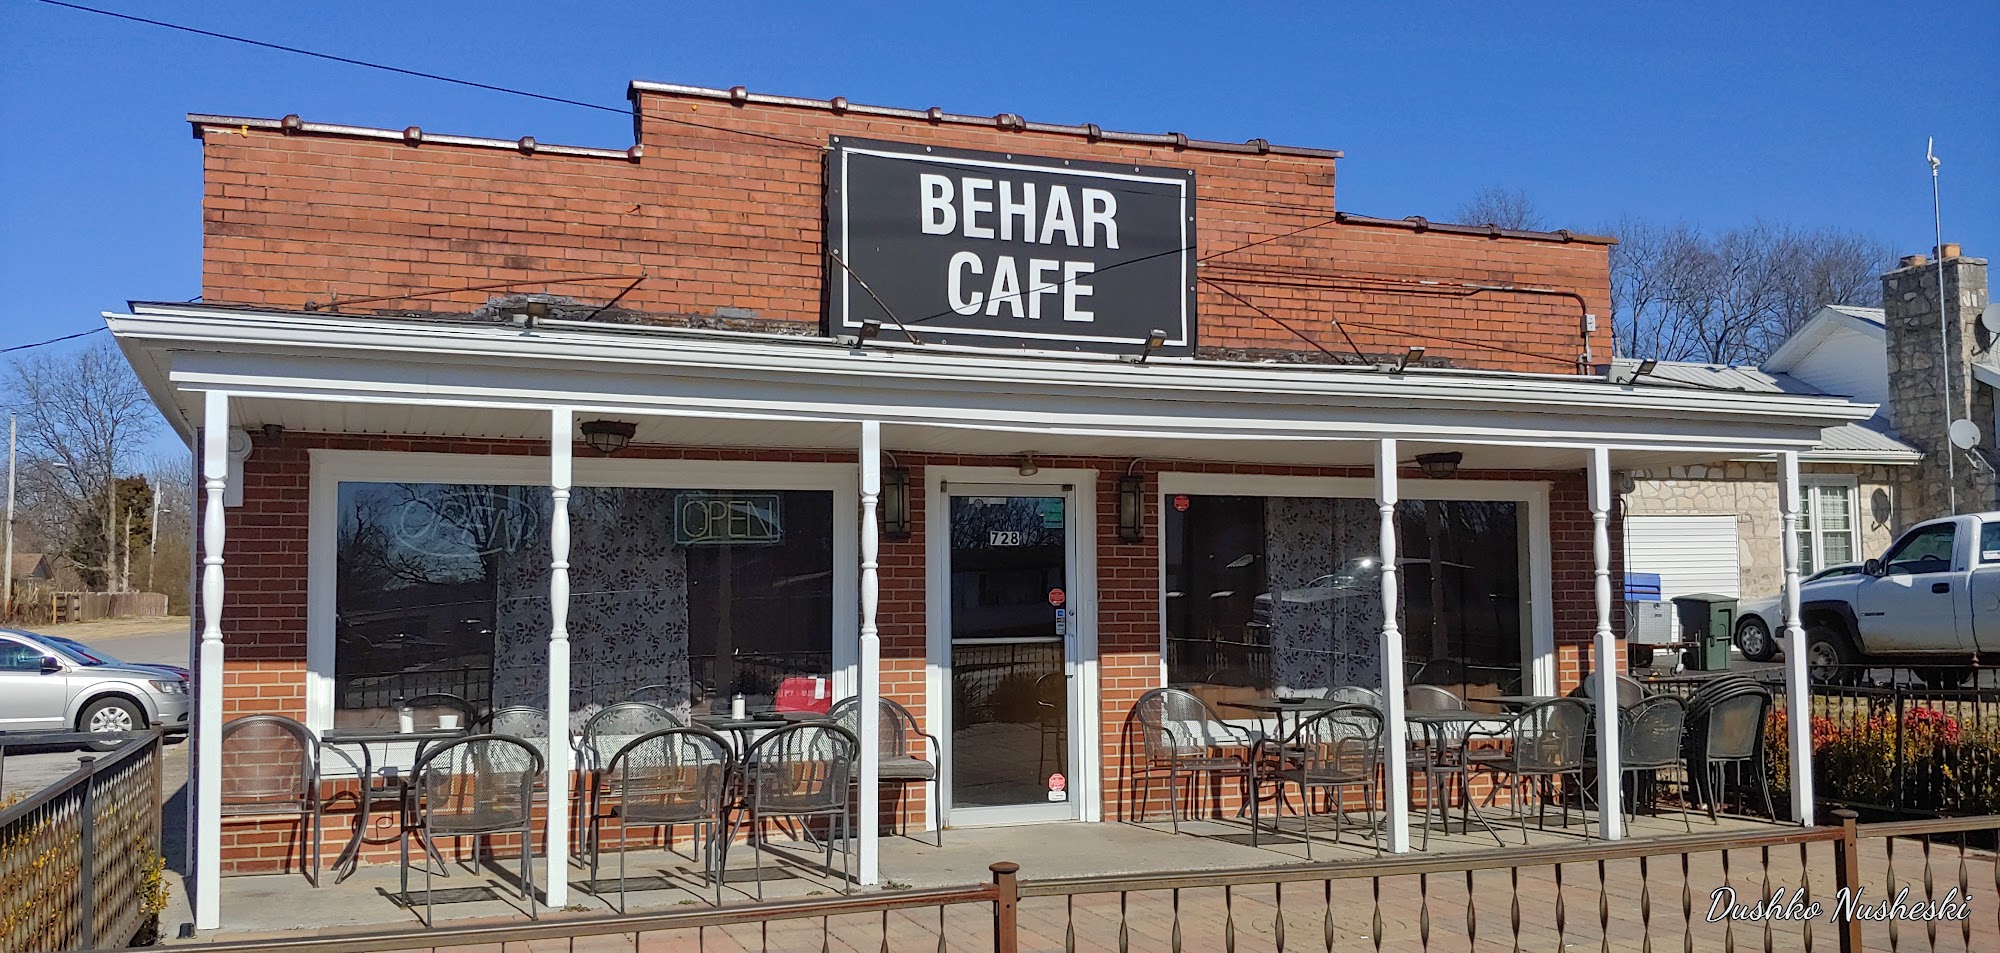 BEHAR CAFE